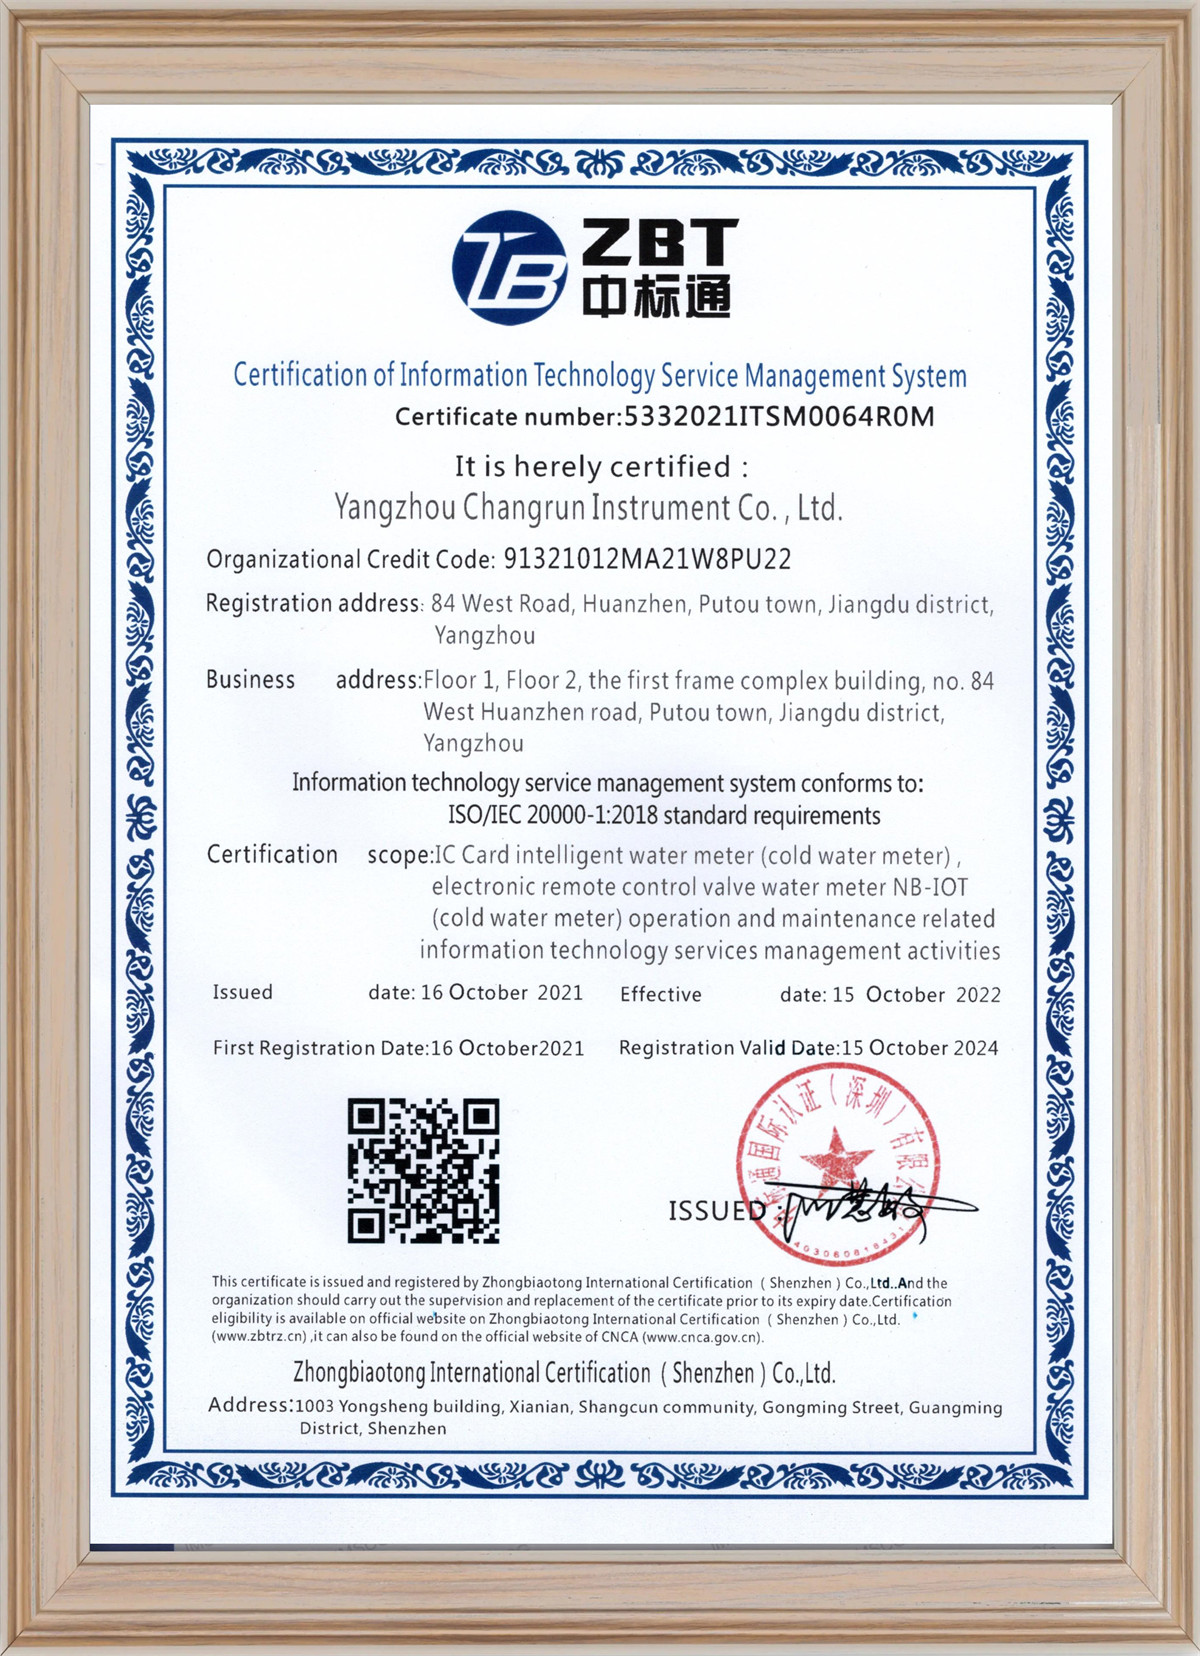 信息技术服务管理体系认证证书-英文版